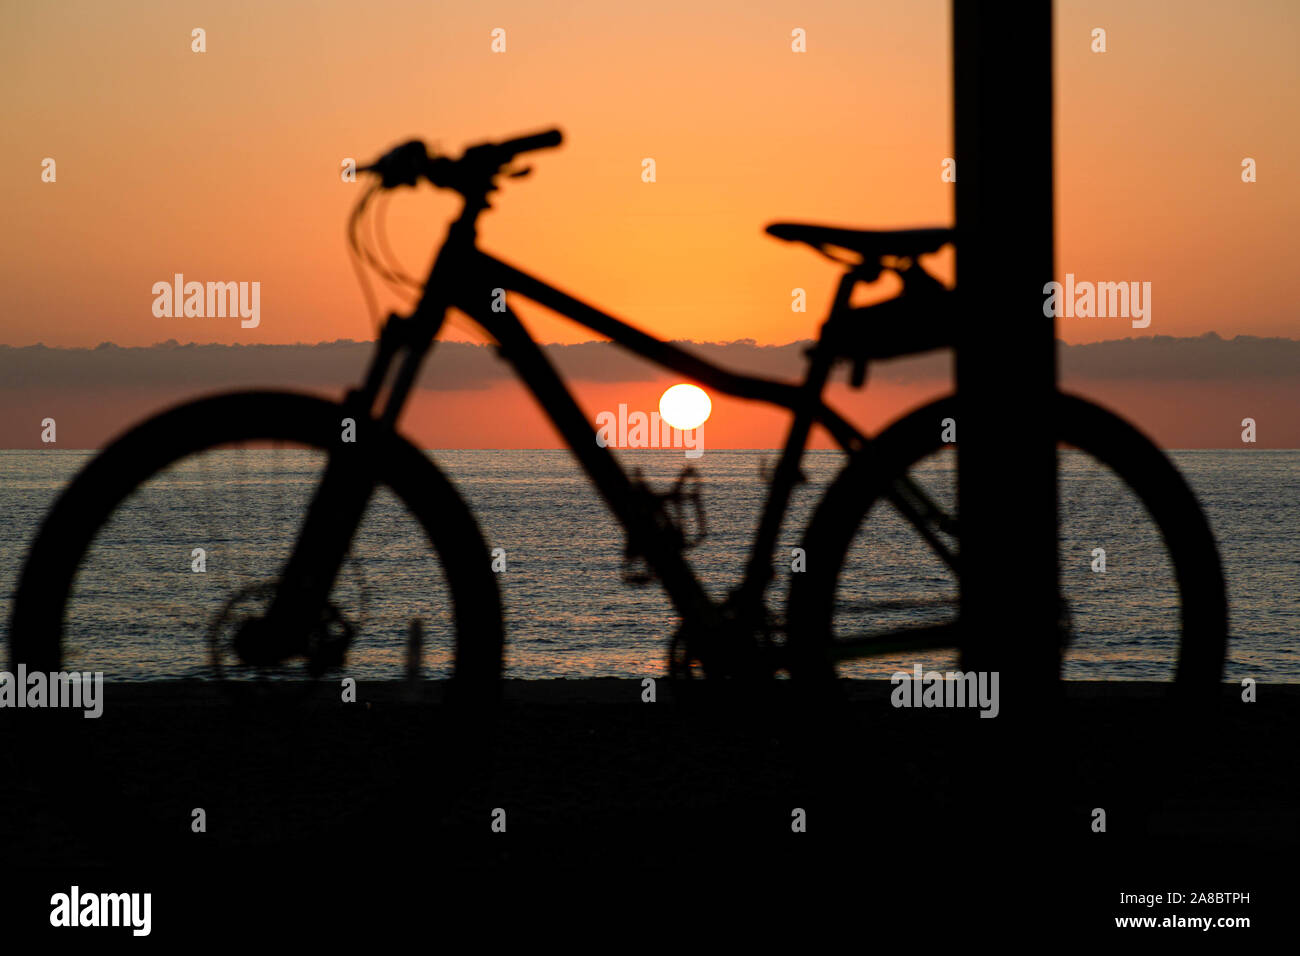 La moto en la playa al amanecer Foto de stock